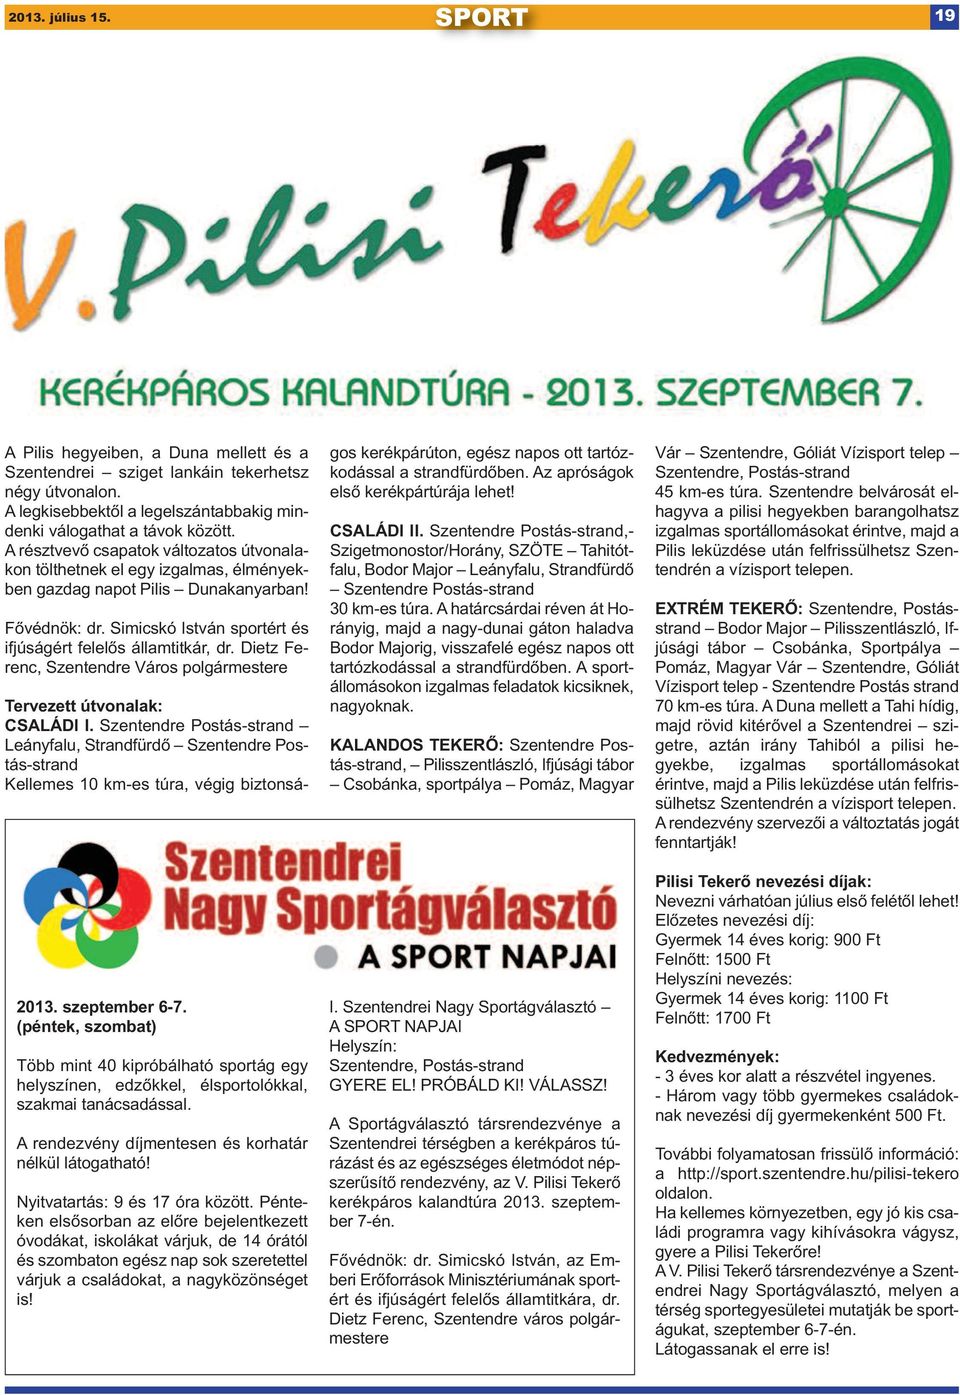 Dietz Ferenc, Szentendre Város polgármestere 2013. szeptember 6-7. (péntek, szombat) Több mint 40 kipróbálható sportág egy helyszínen, edzőkkel, élsportolókkal, szakmai tanácsadással.